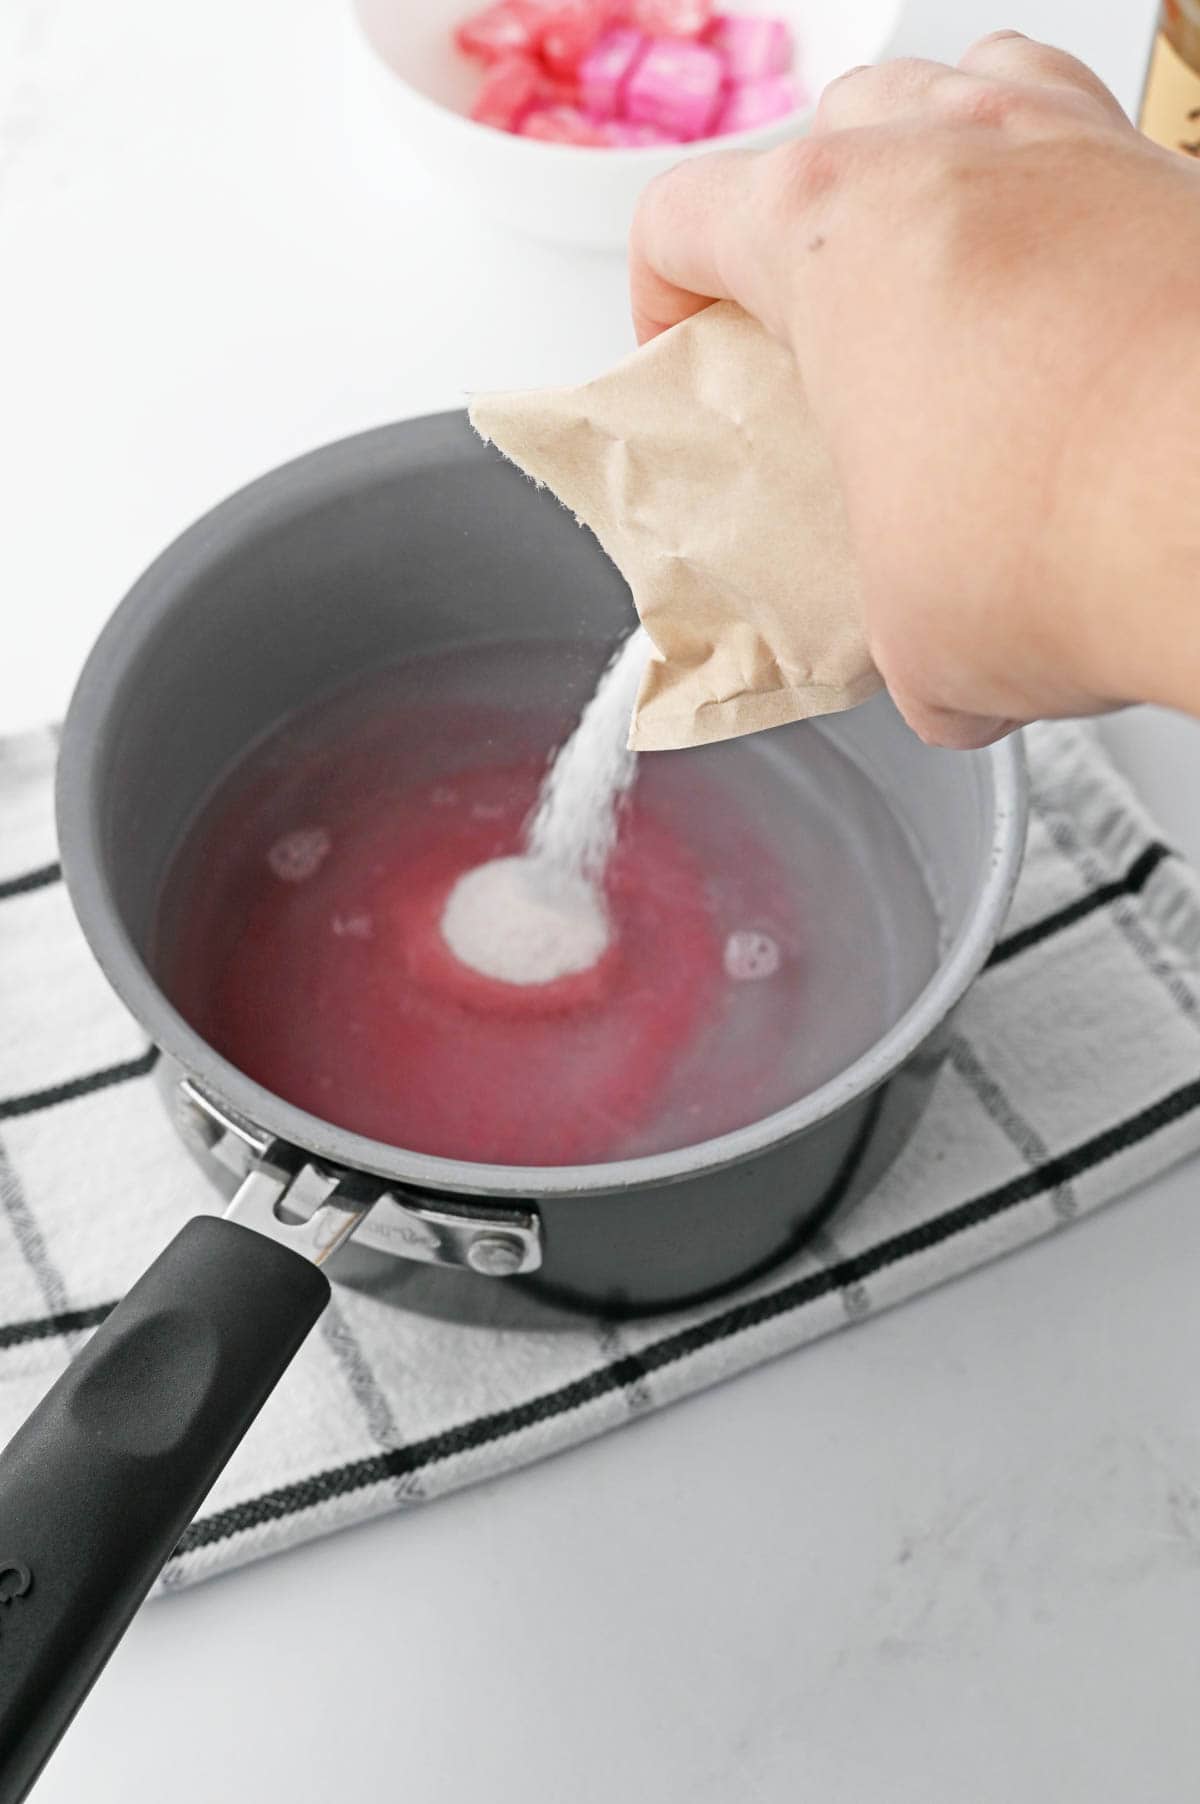 A person pouring jello into a pan.